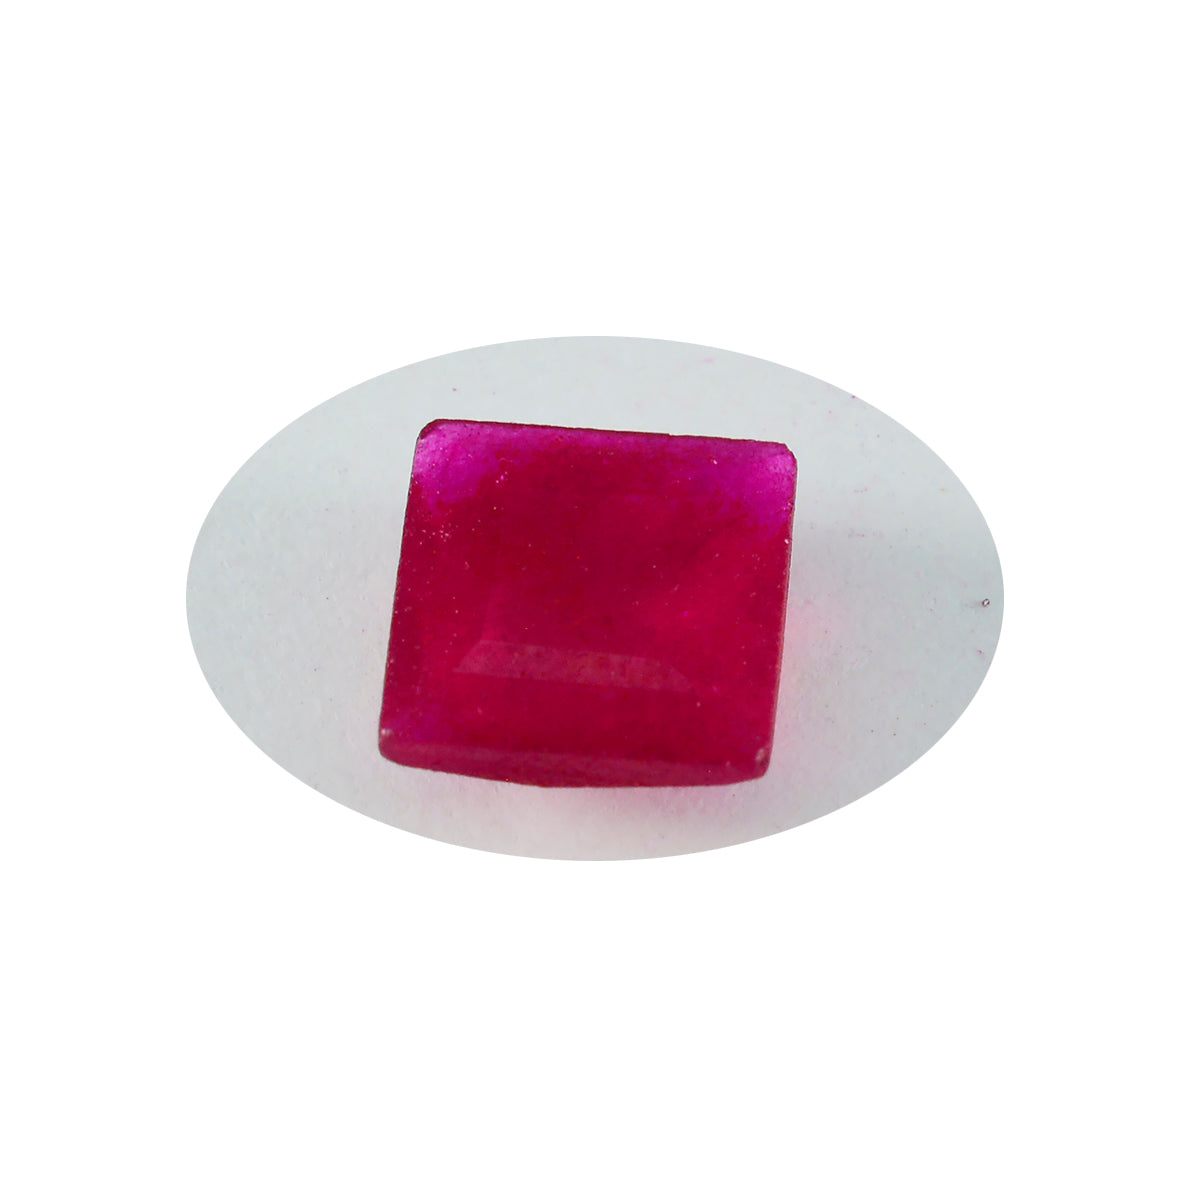 Riyogems 1PC echte rode jaspis gefacetteerd 14x14 mm vierkante vorm uitstekende kwaliteit losse edelsteen